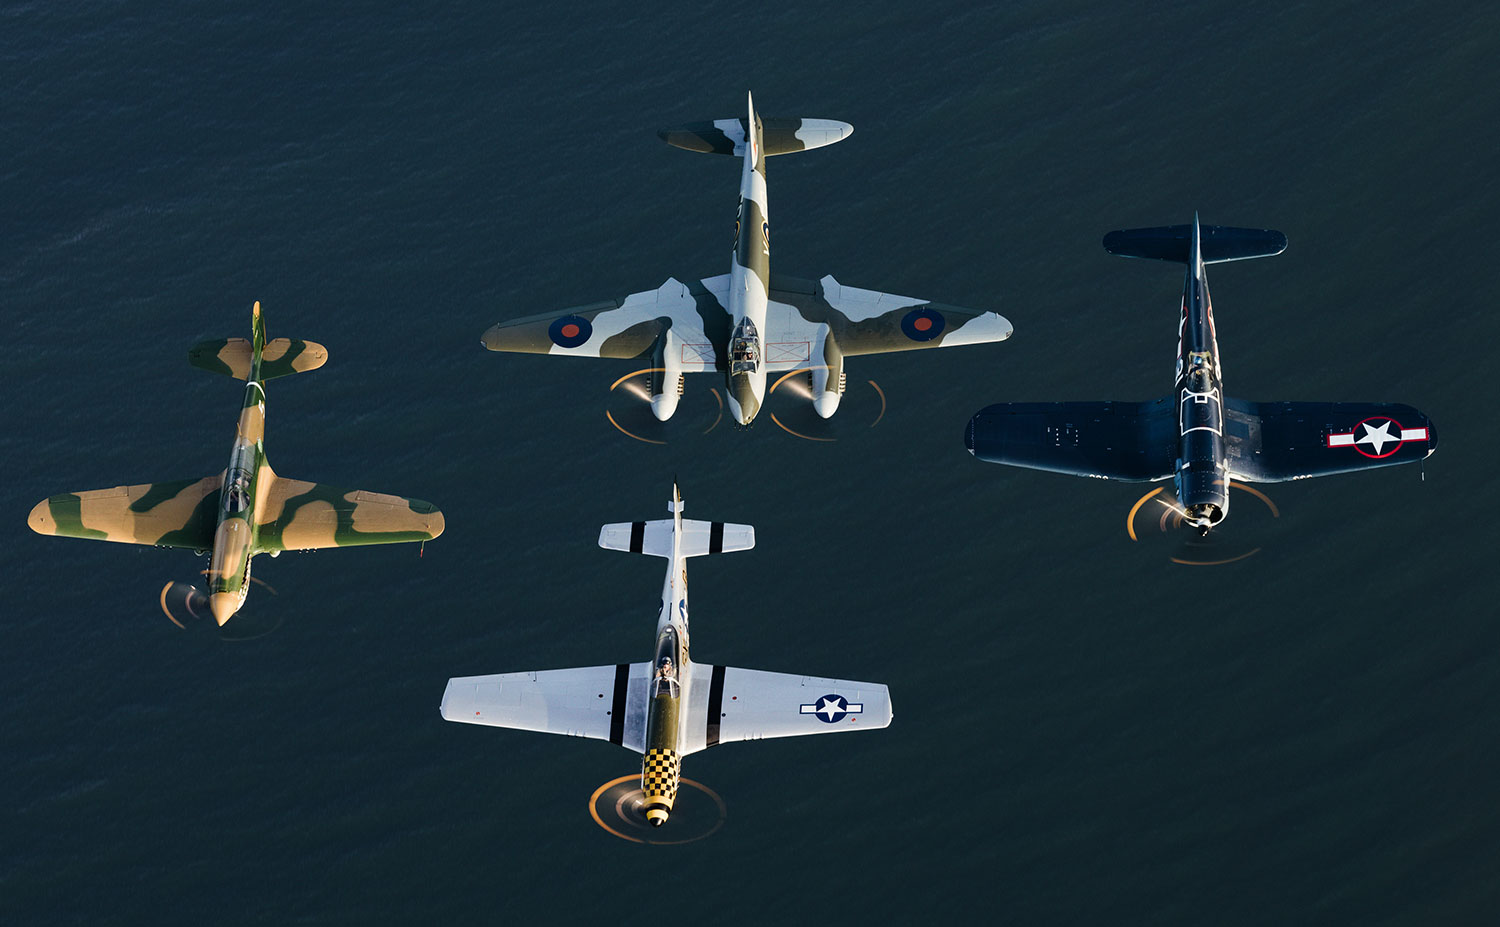 De izquierda a derecha: Curtis Warhawk, De Havilland Mosquito, P-51 Mustang y Vought F4U Corsair